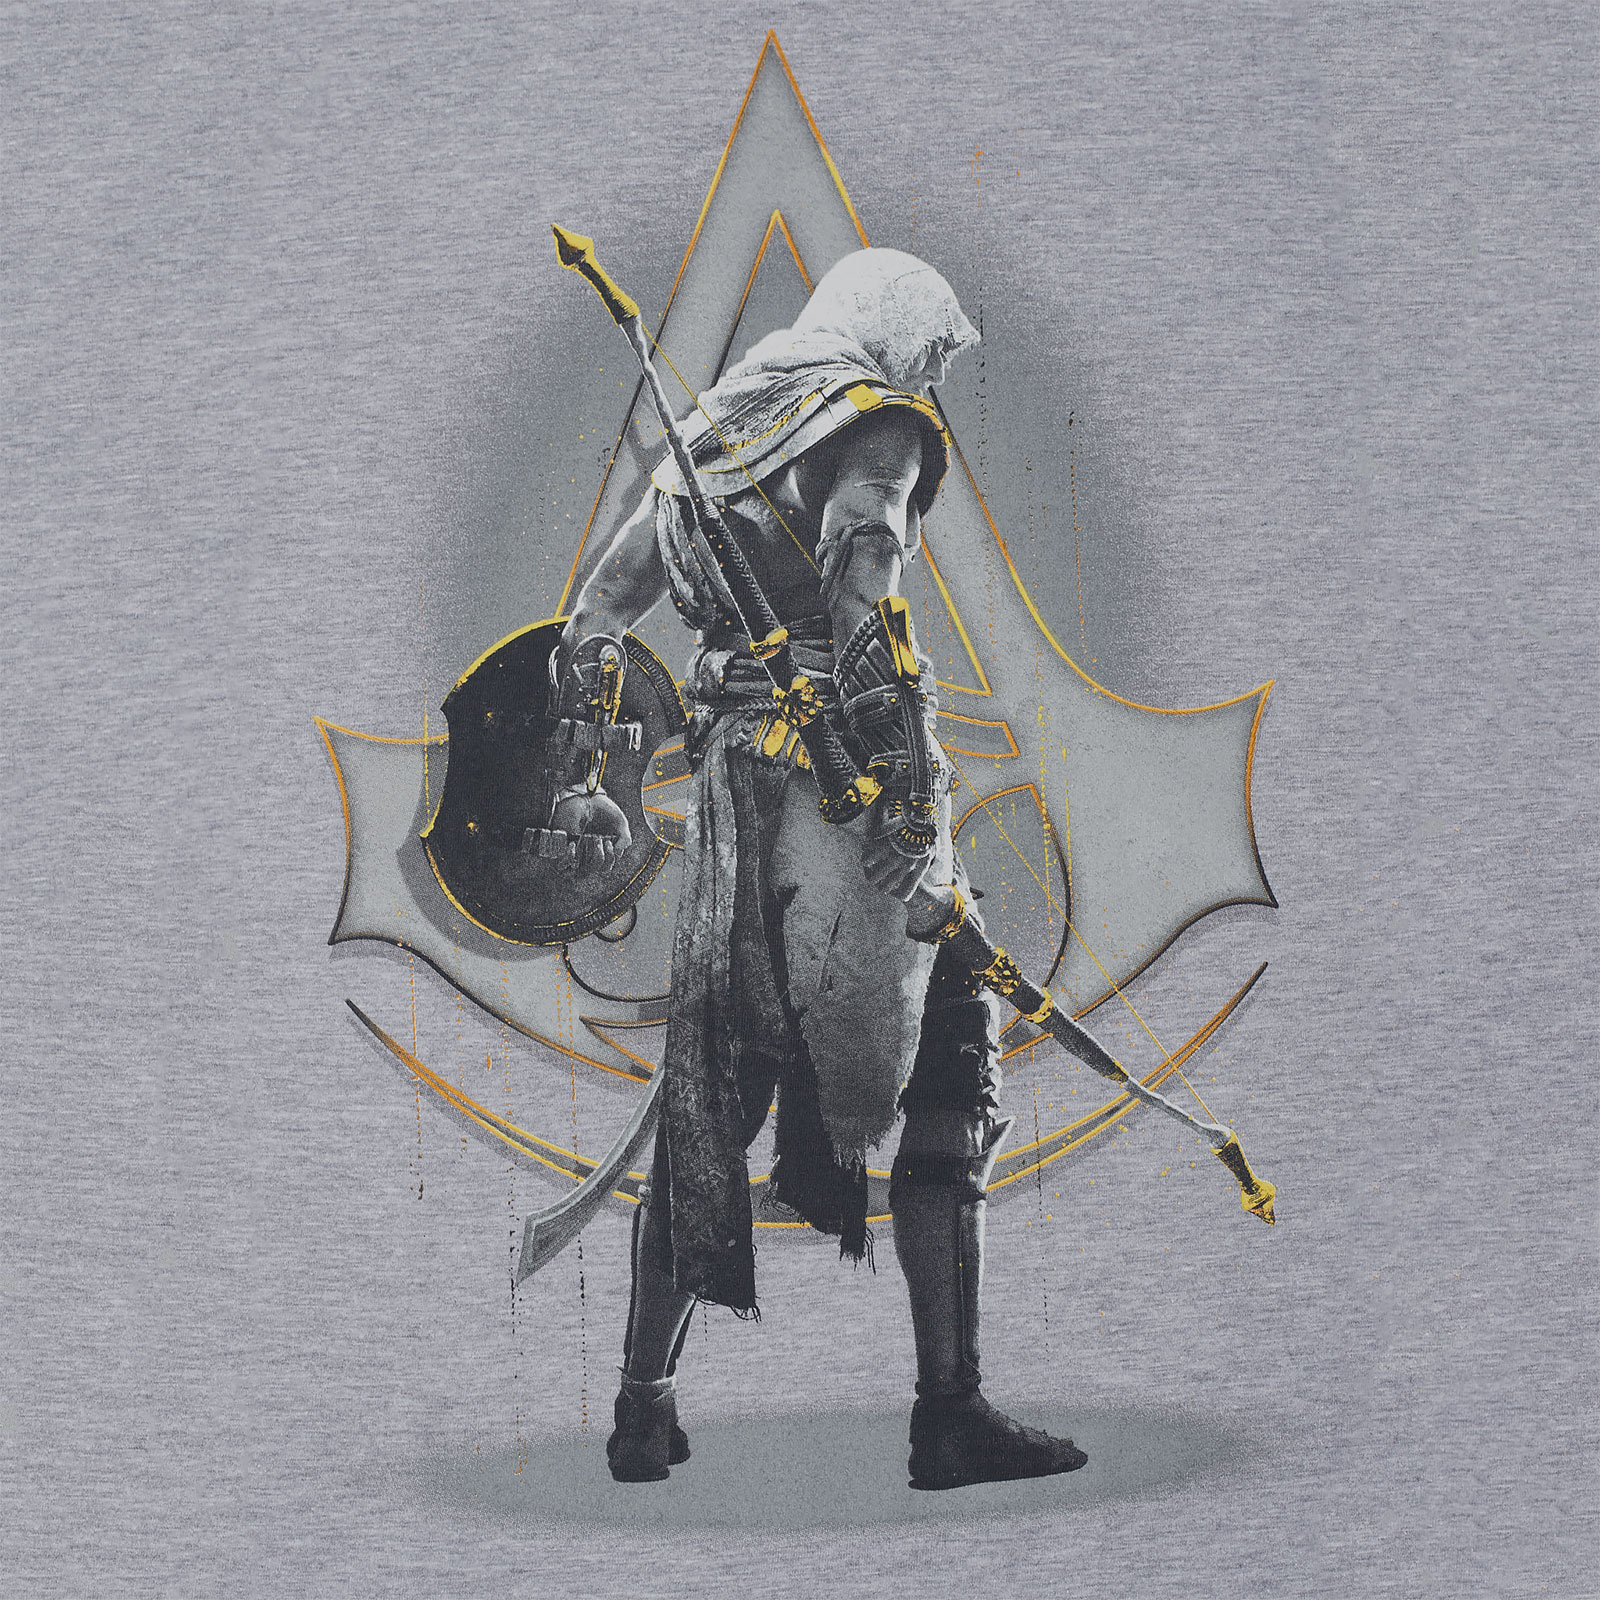 Assassins Creed - Bayek T-shirt gray